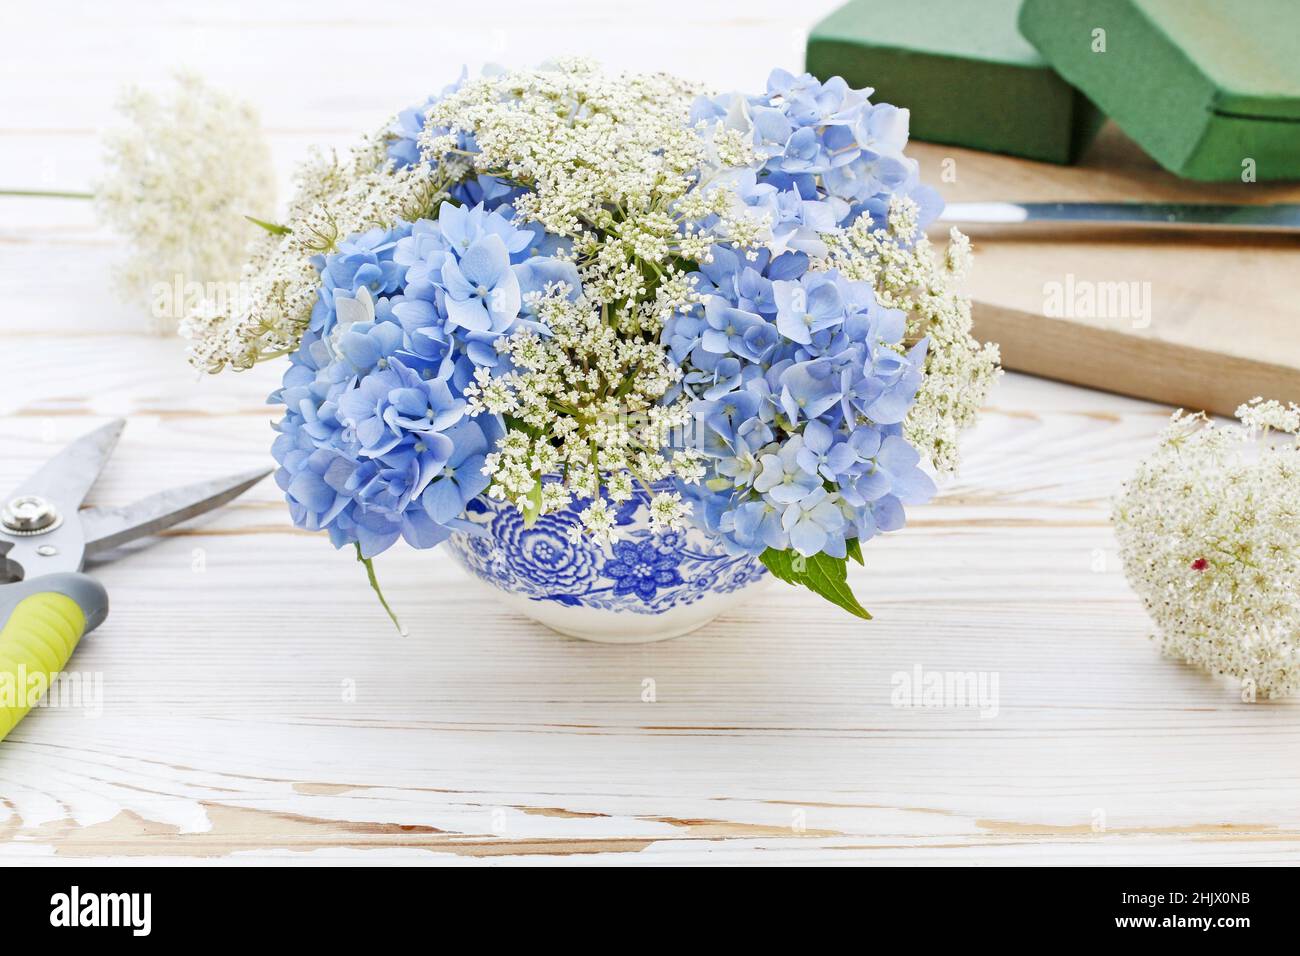 Floristería en wotk: Cómo hacer arreglos florales con flores azules de  hortensia (hydrangea) y encaje blanco de la reina Ana (daucus carota) sobre  una mesa de madera blanca. Paso a paso, tutorial